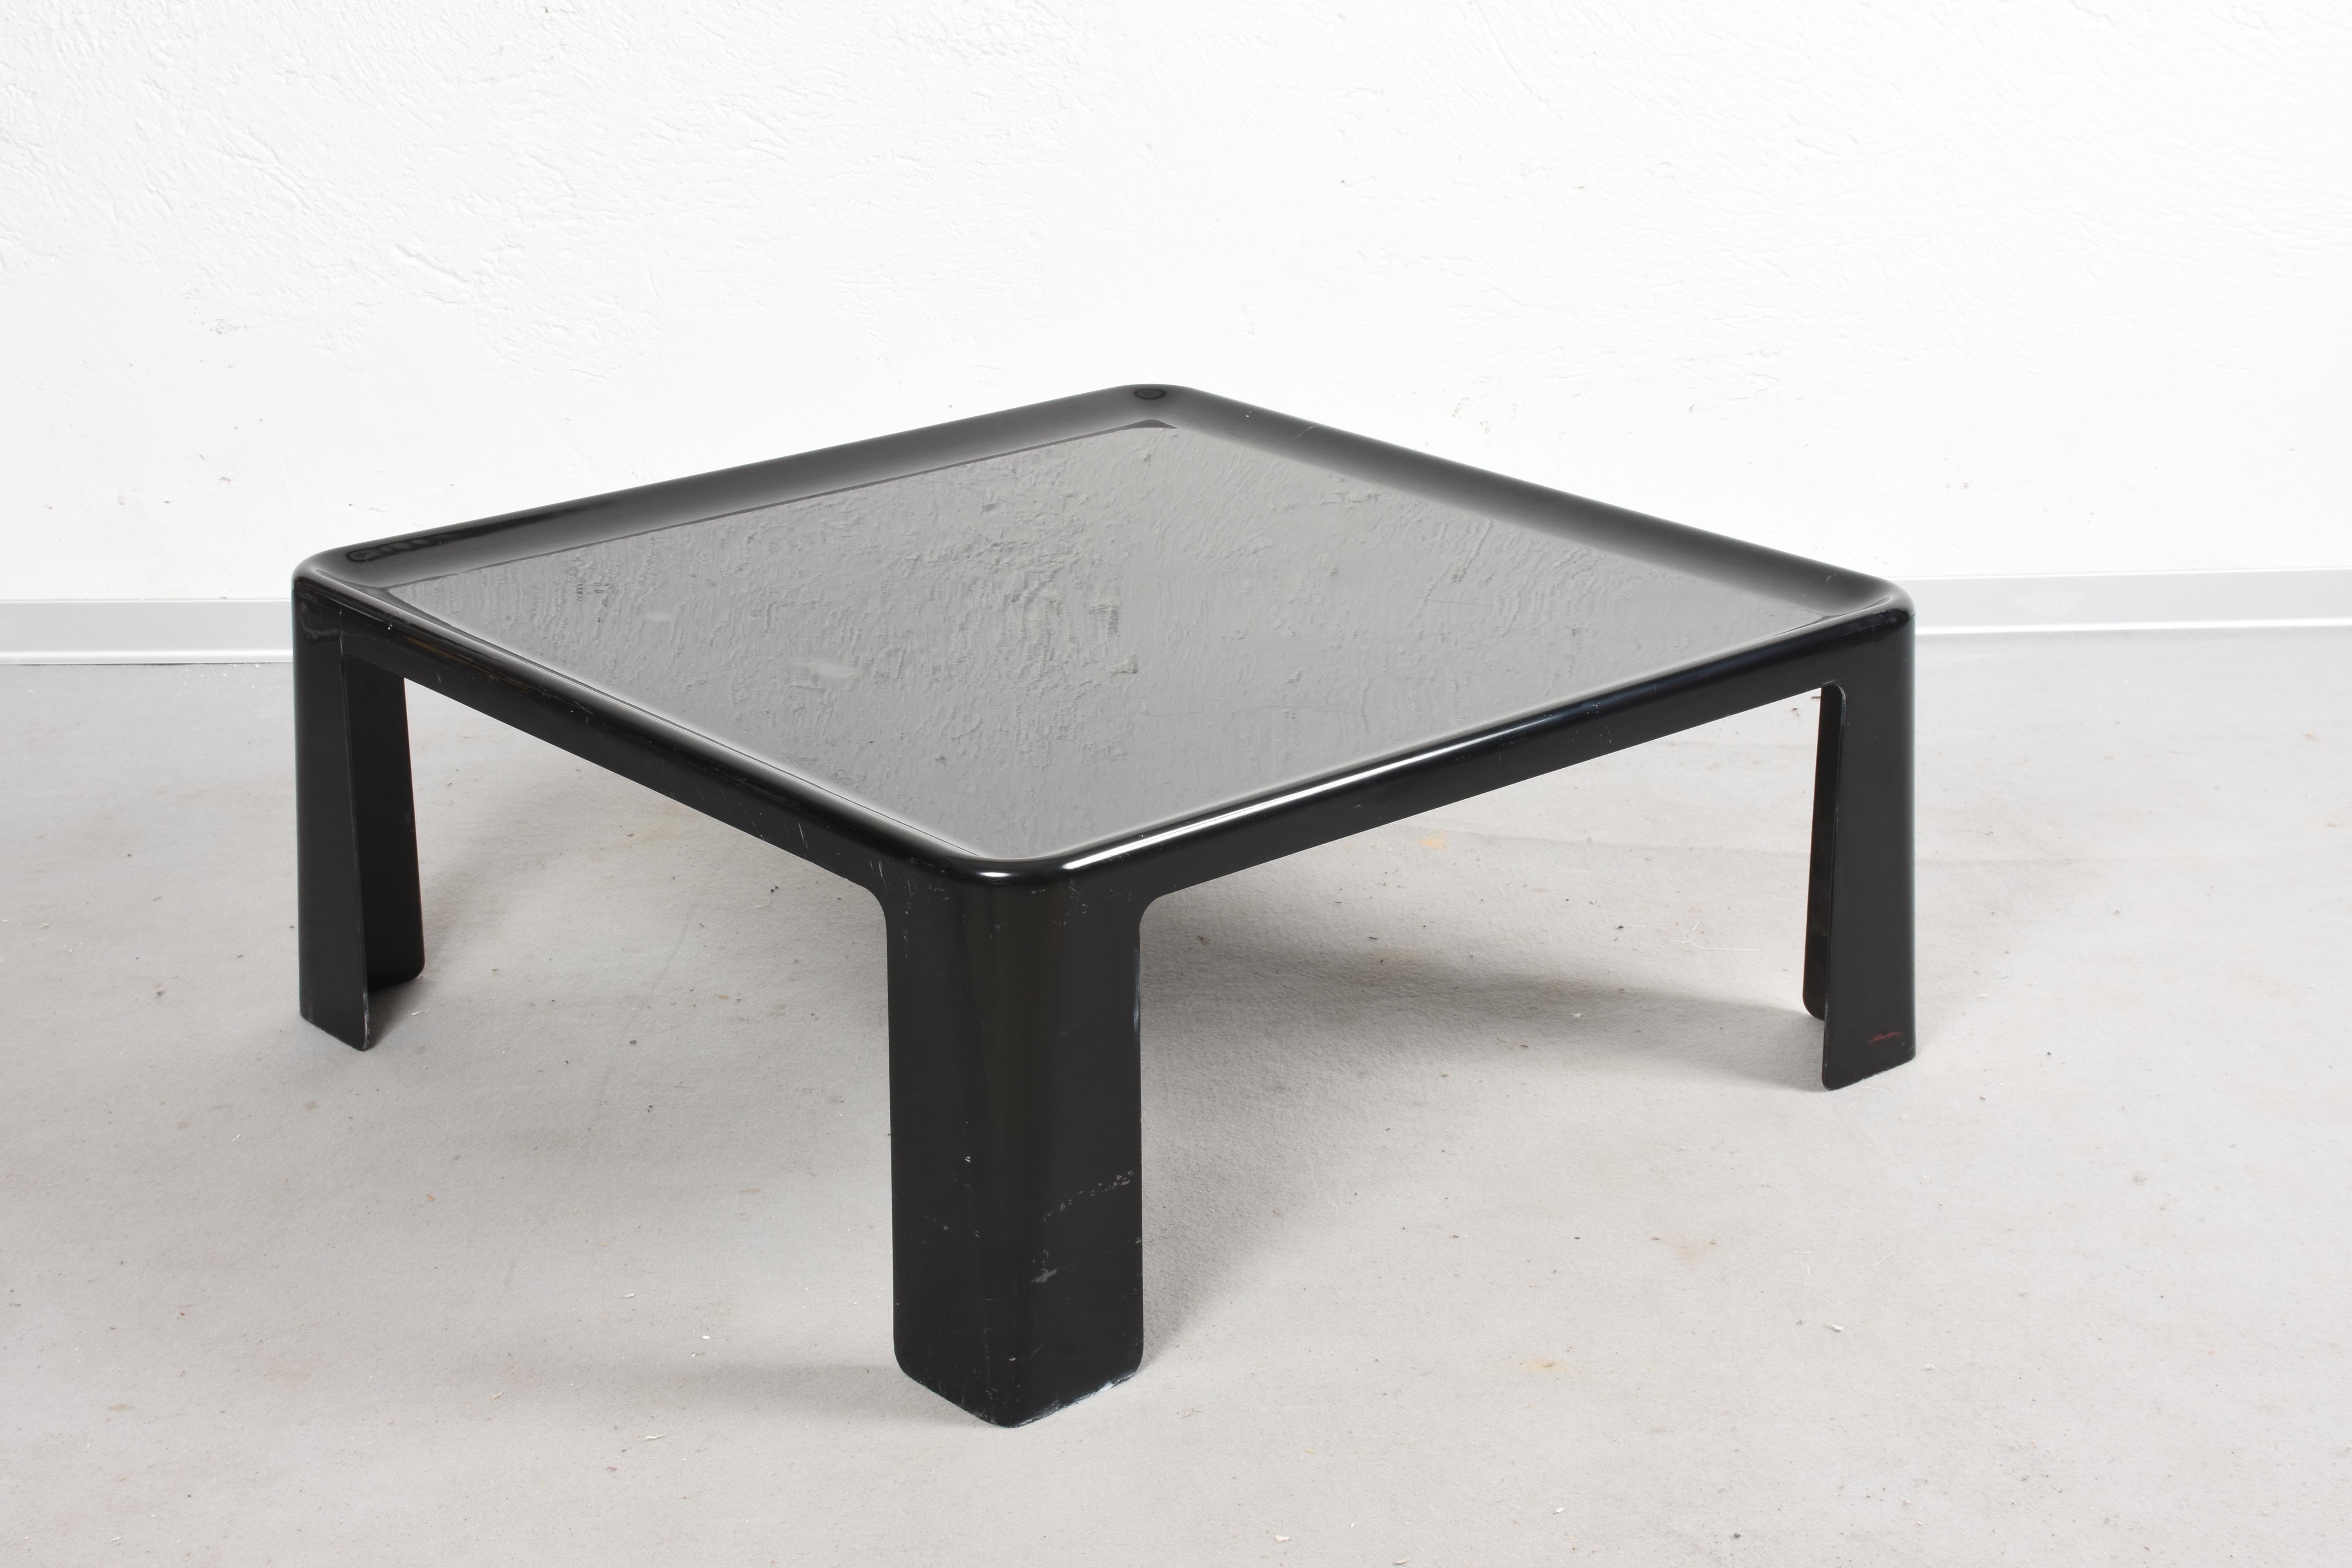 Cette table d'appoint ou table basse est fabriquée en fibre de verre (Fiberlite) de couleur noire. Il est de forme carrée avec un plateau dentelé. Il a été conçu par Mario Bellini pour C&B Italia dans les années 1960.
Cette table est de grande